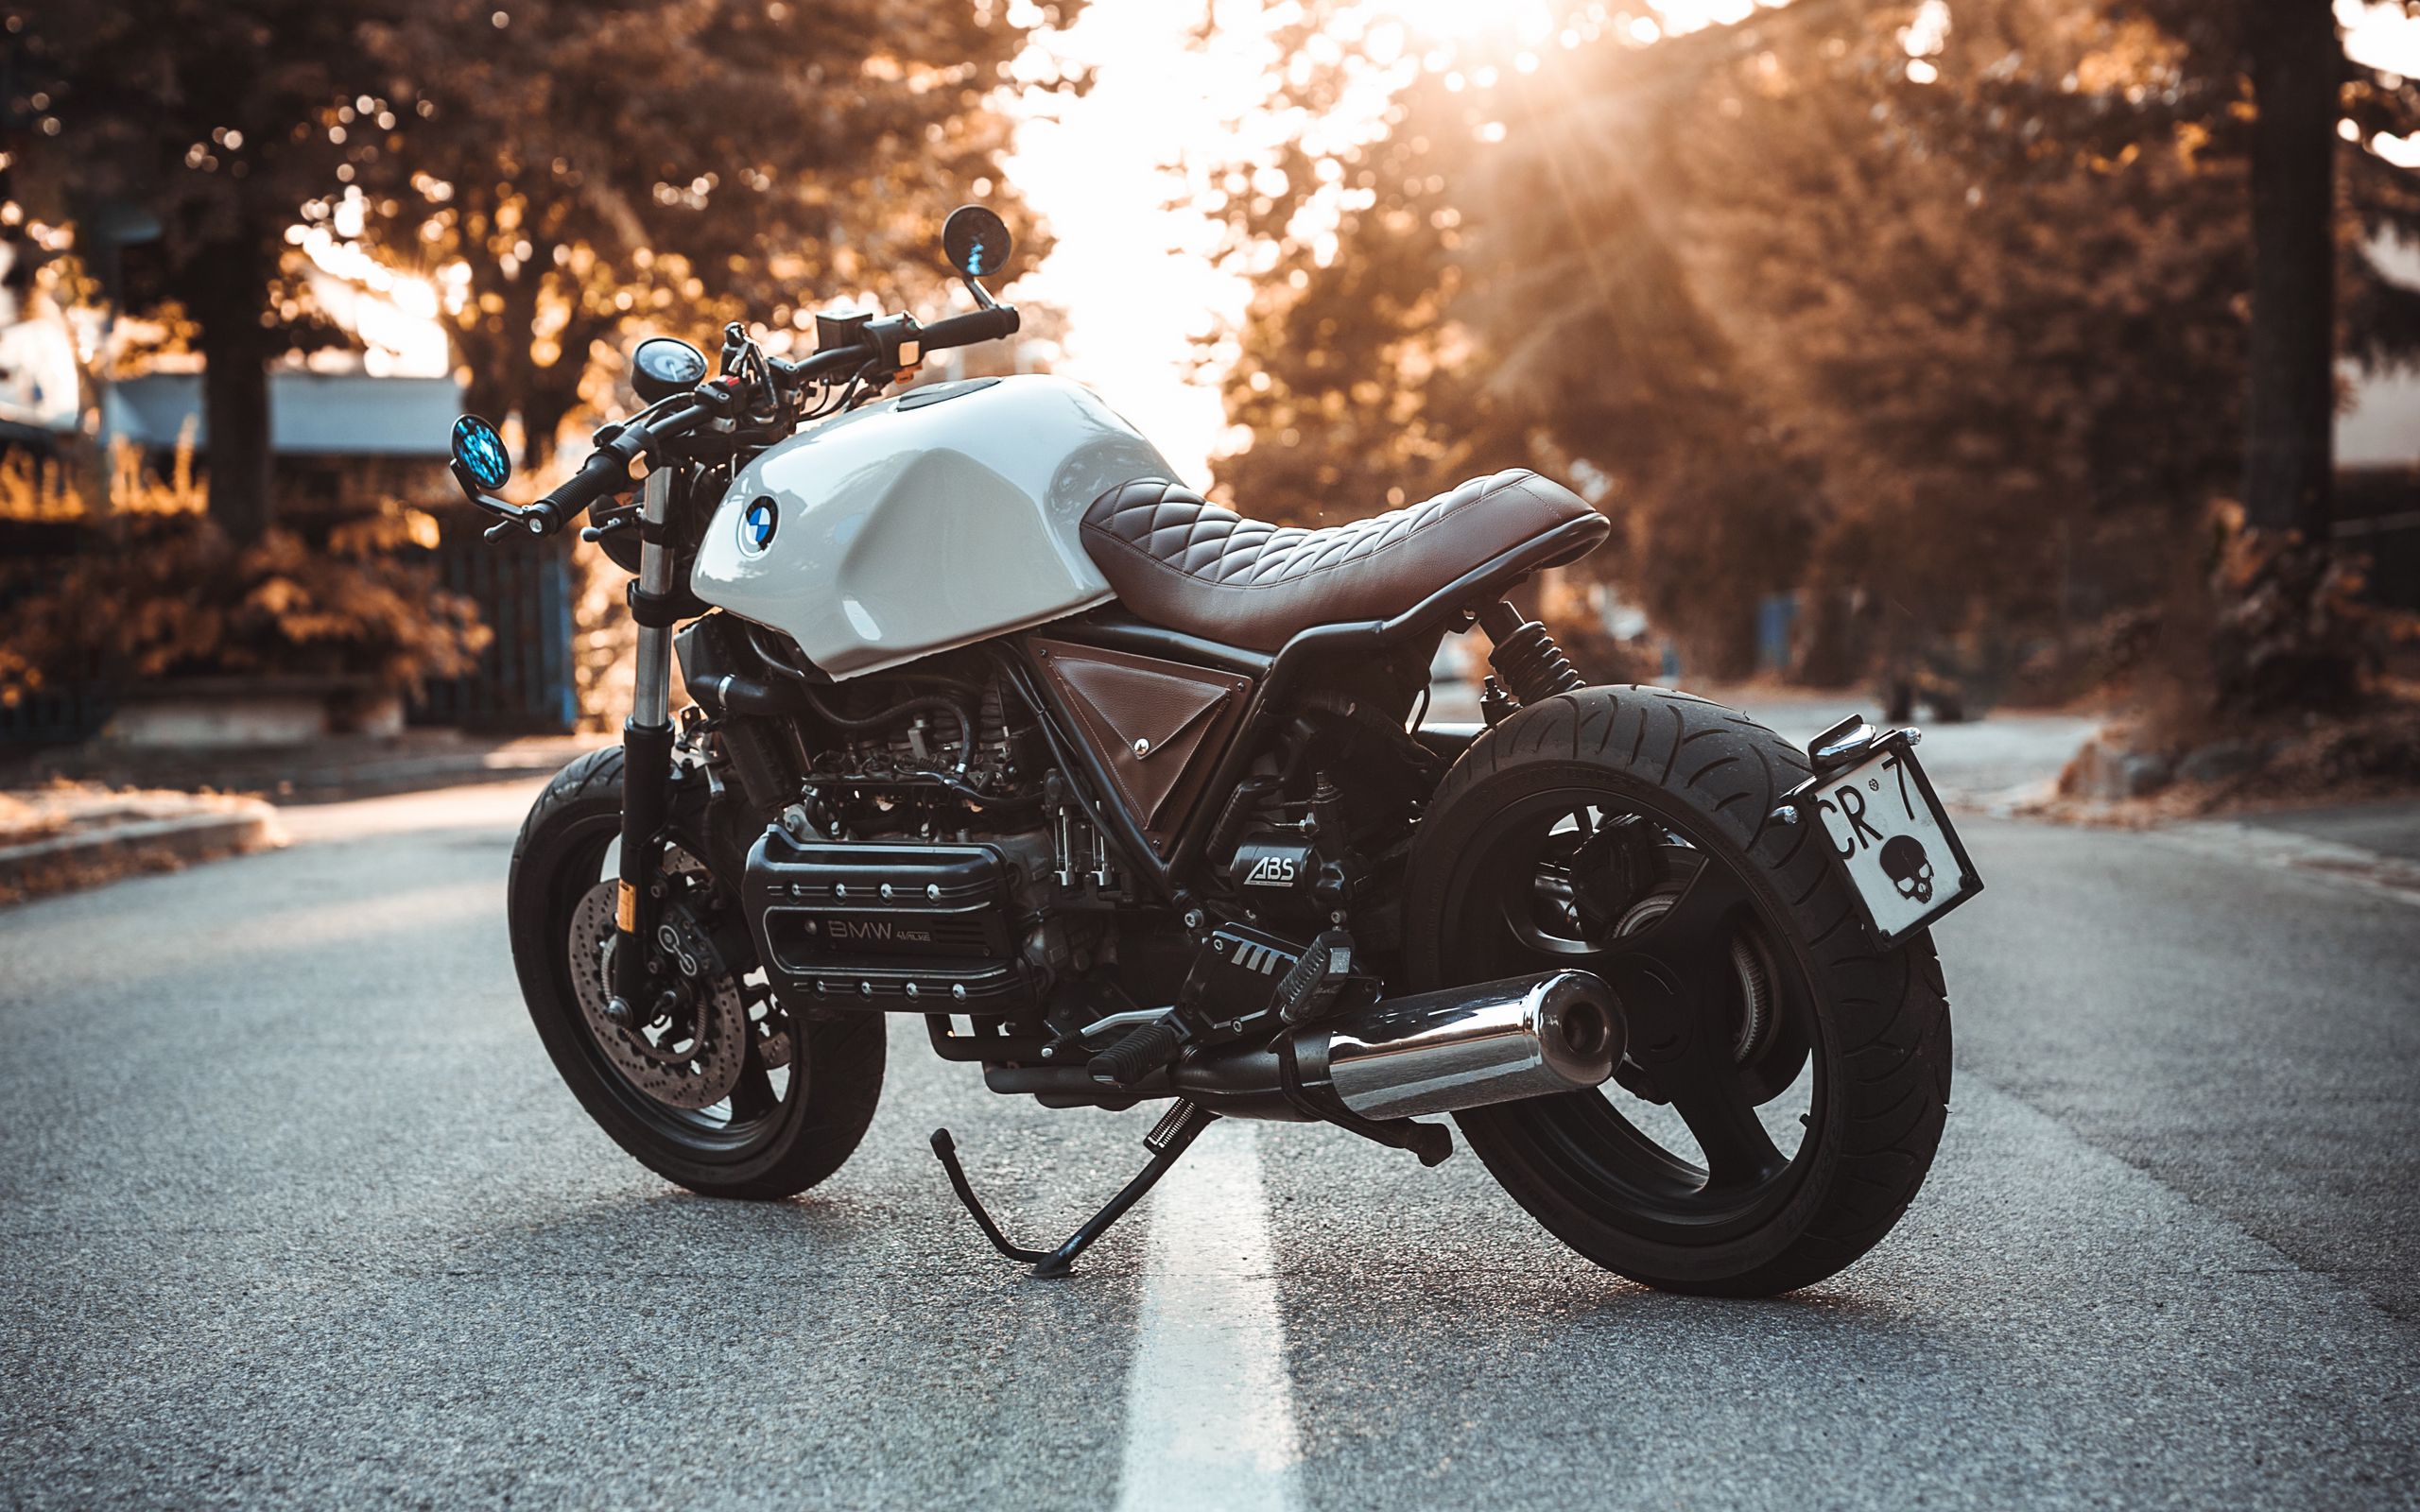 2560x1600 Wallpaper bmw k100, motorcycle, bike, side view